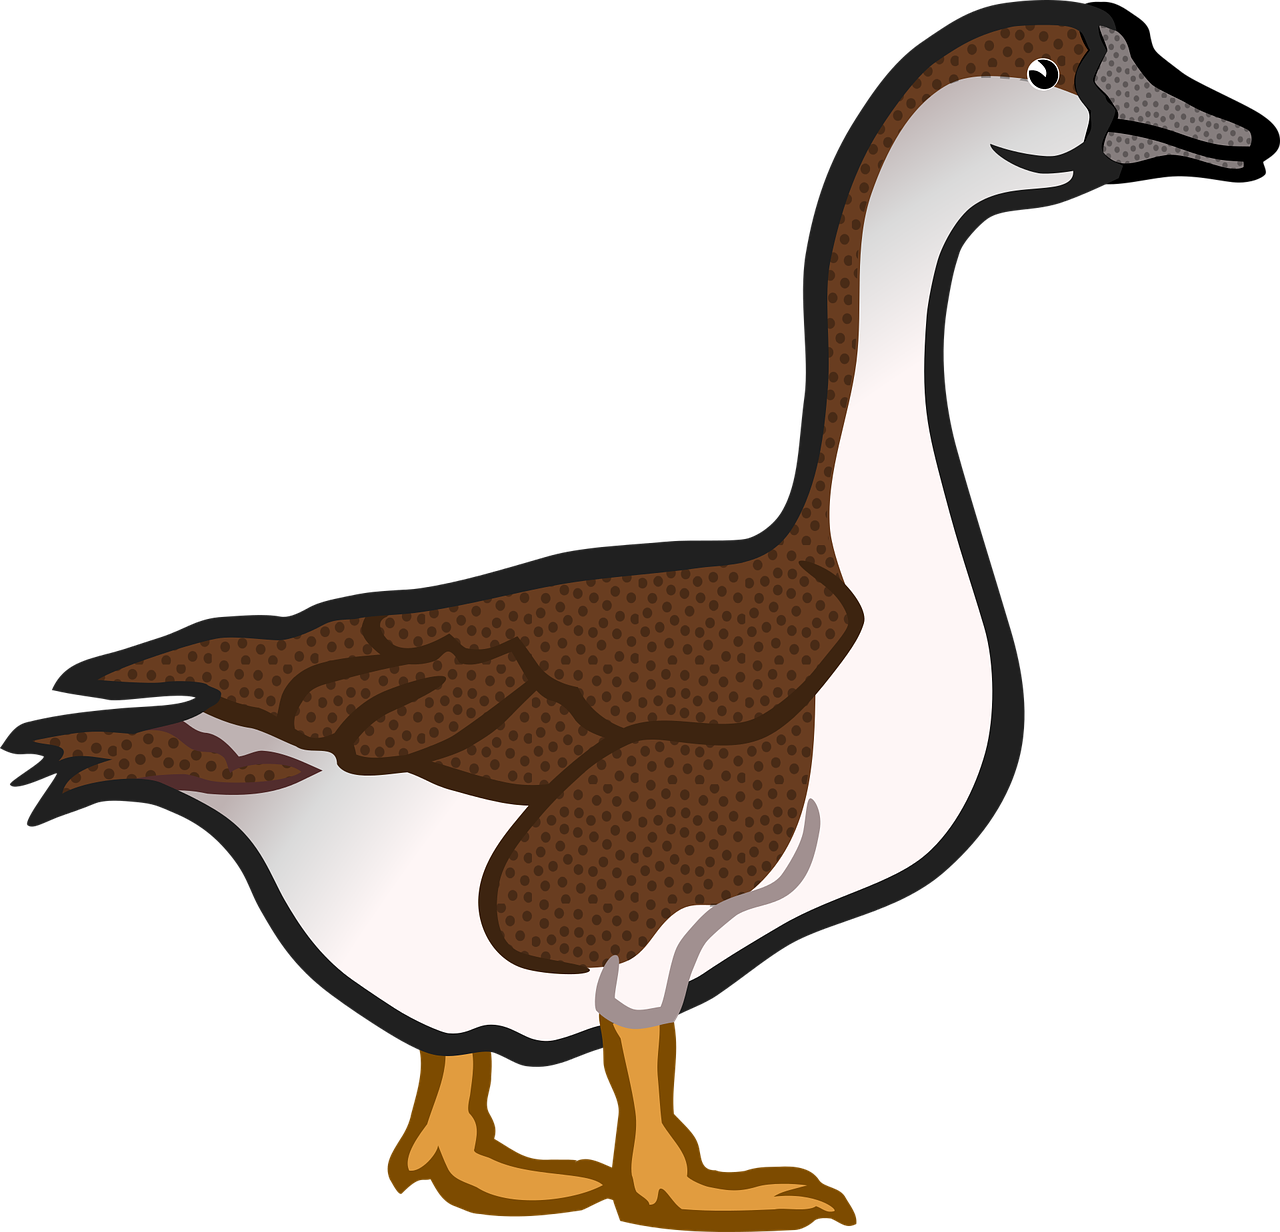 A Cartoon Of A Duck